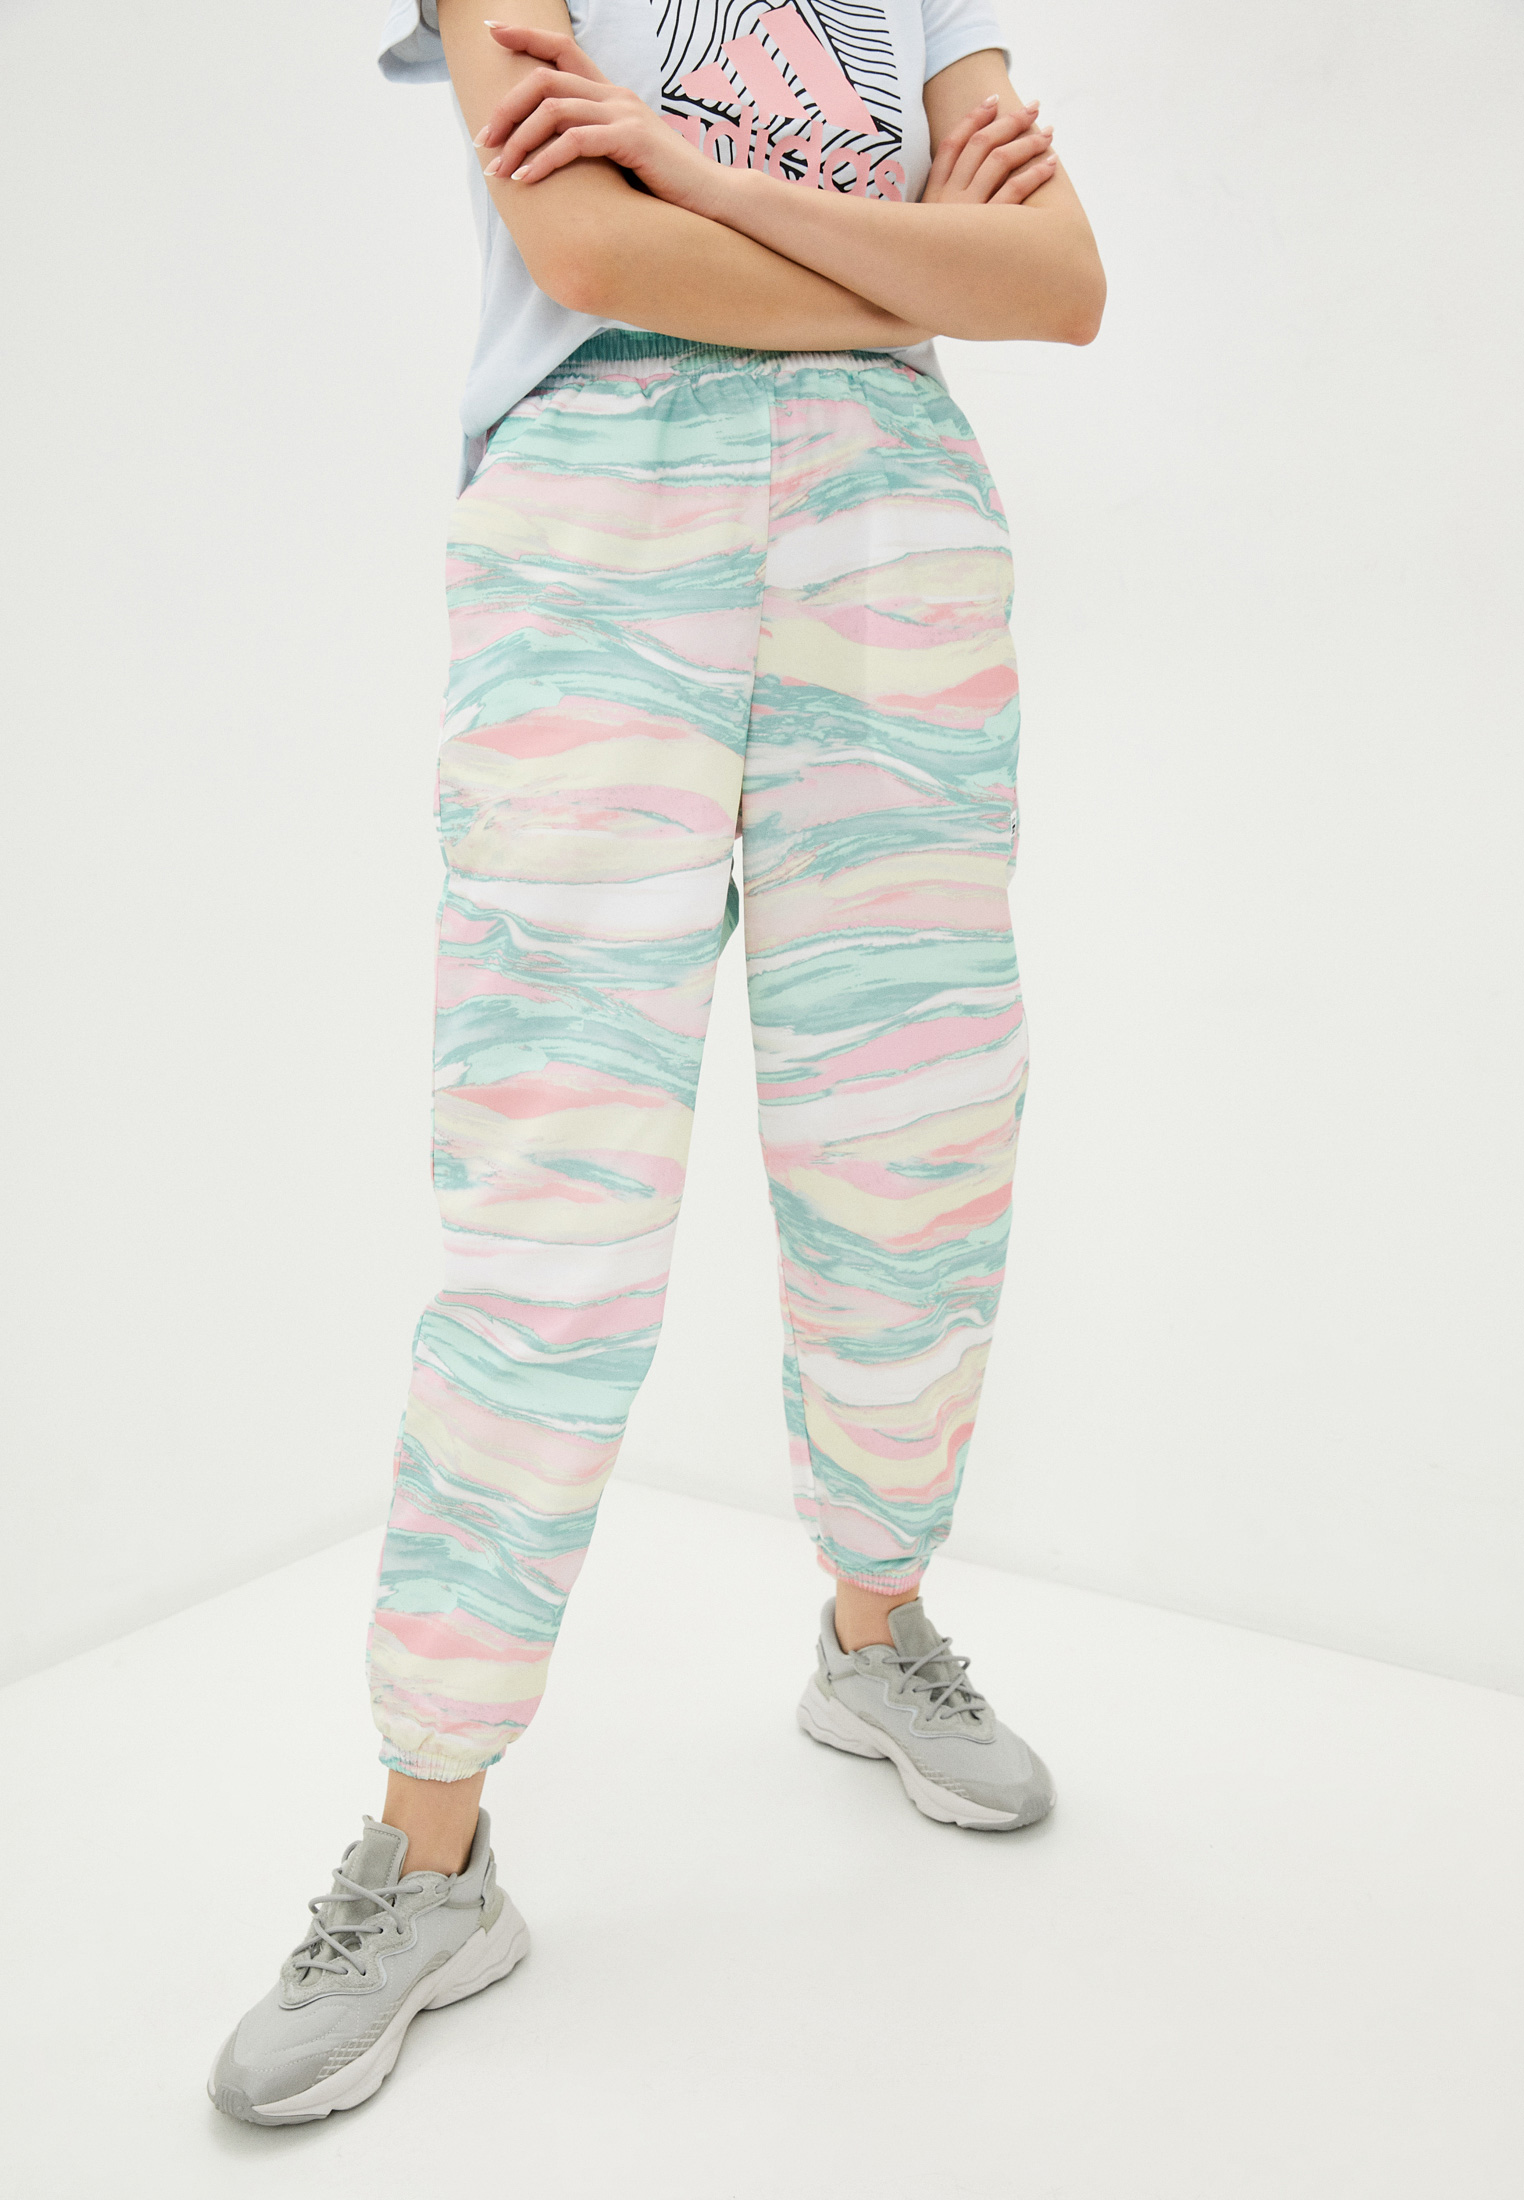 Женские брюки Adidas Originals (Адидас Ориджиналс) GN4290 купить